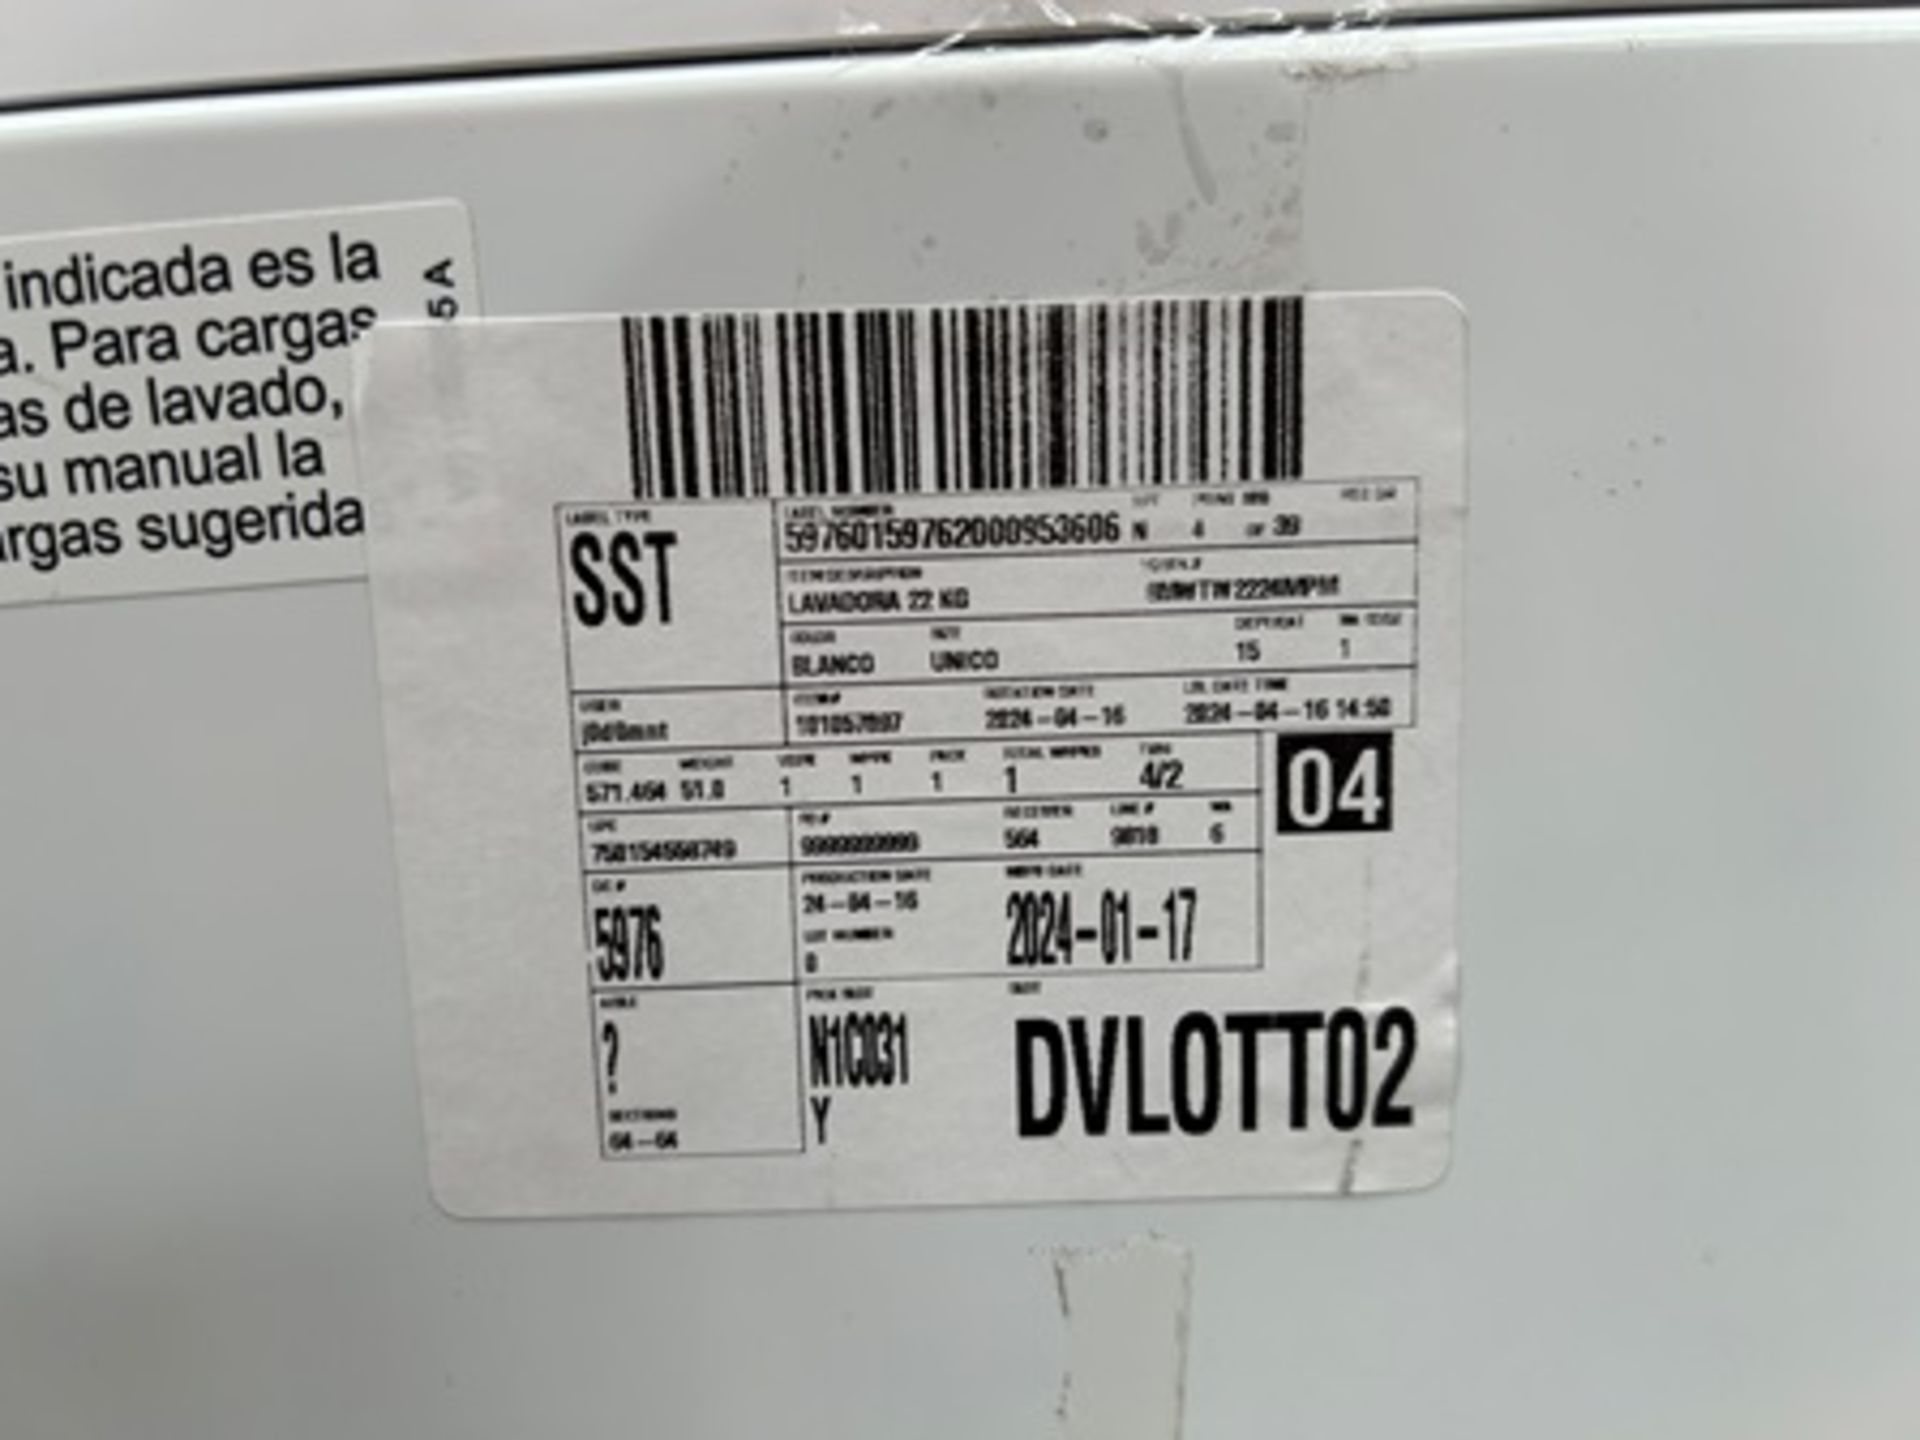 Lote de 2 lavadoras contiene: 1 Lavadora de 22 KG Marca WHIRPOOL, Modelo 8MWTW2224MPM0 - Image 9 of 10